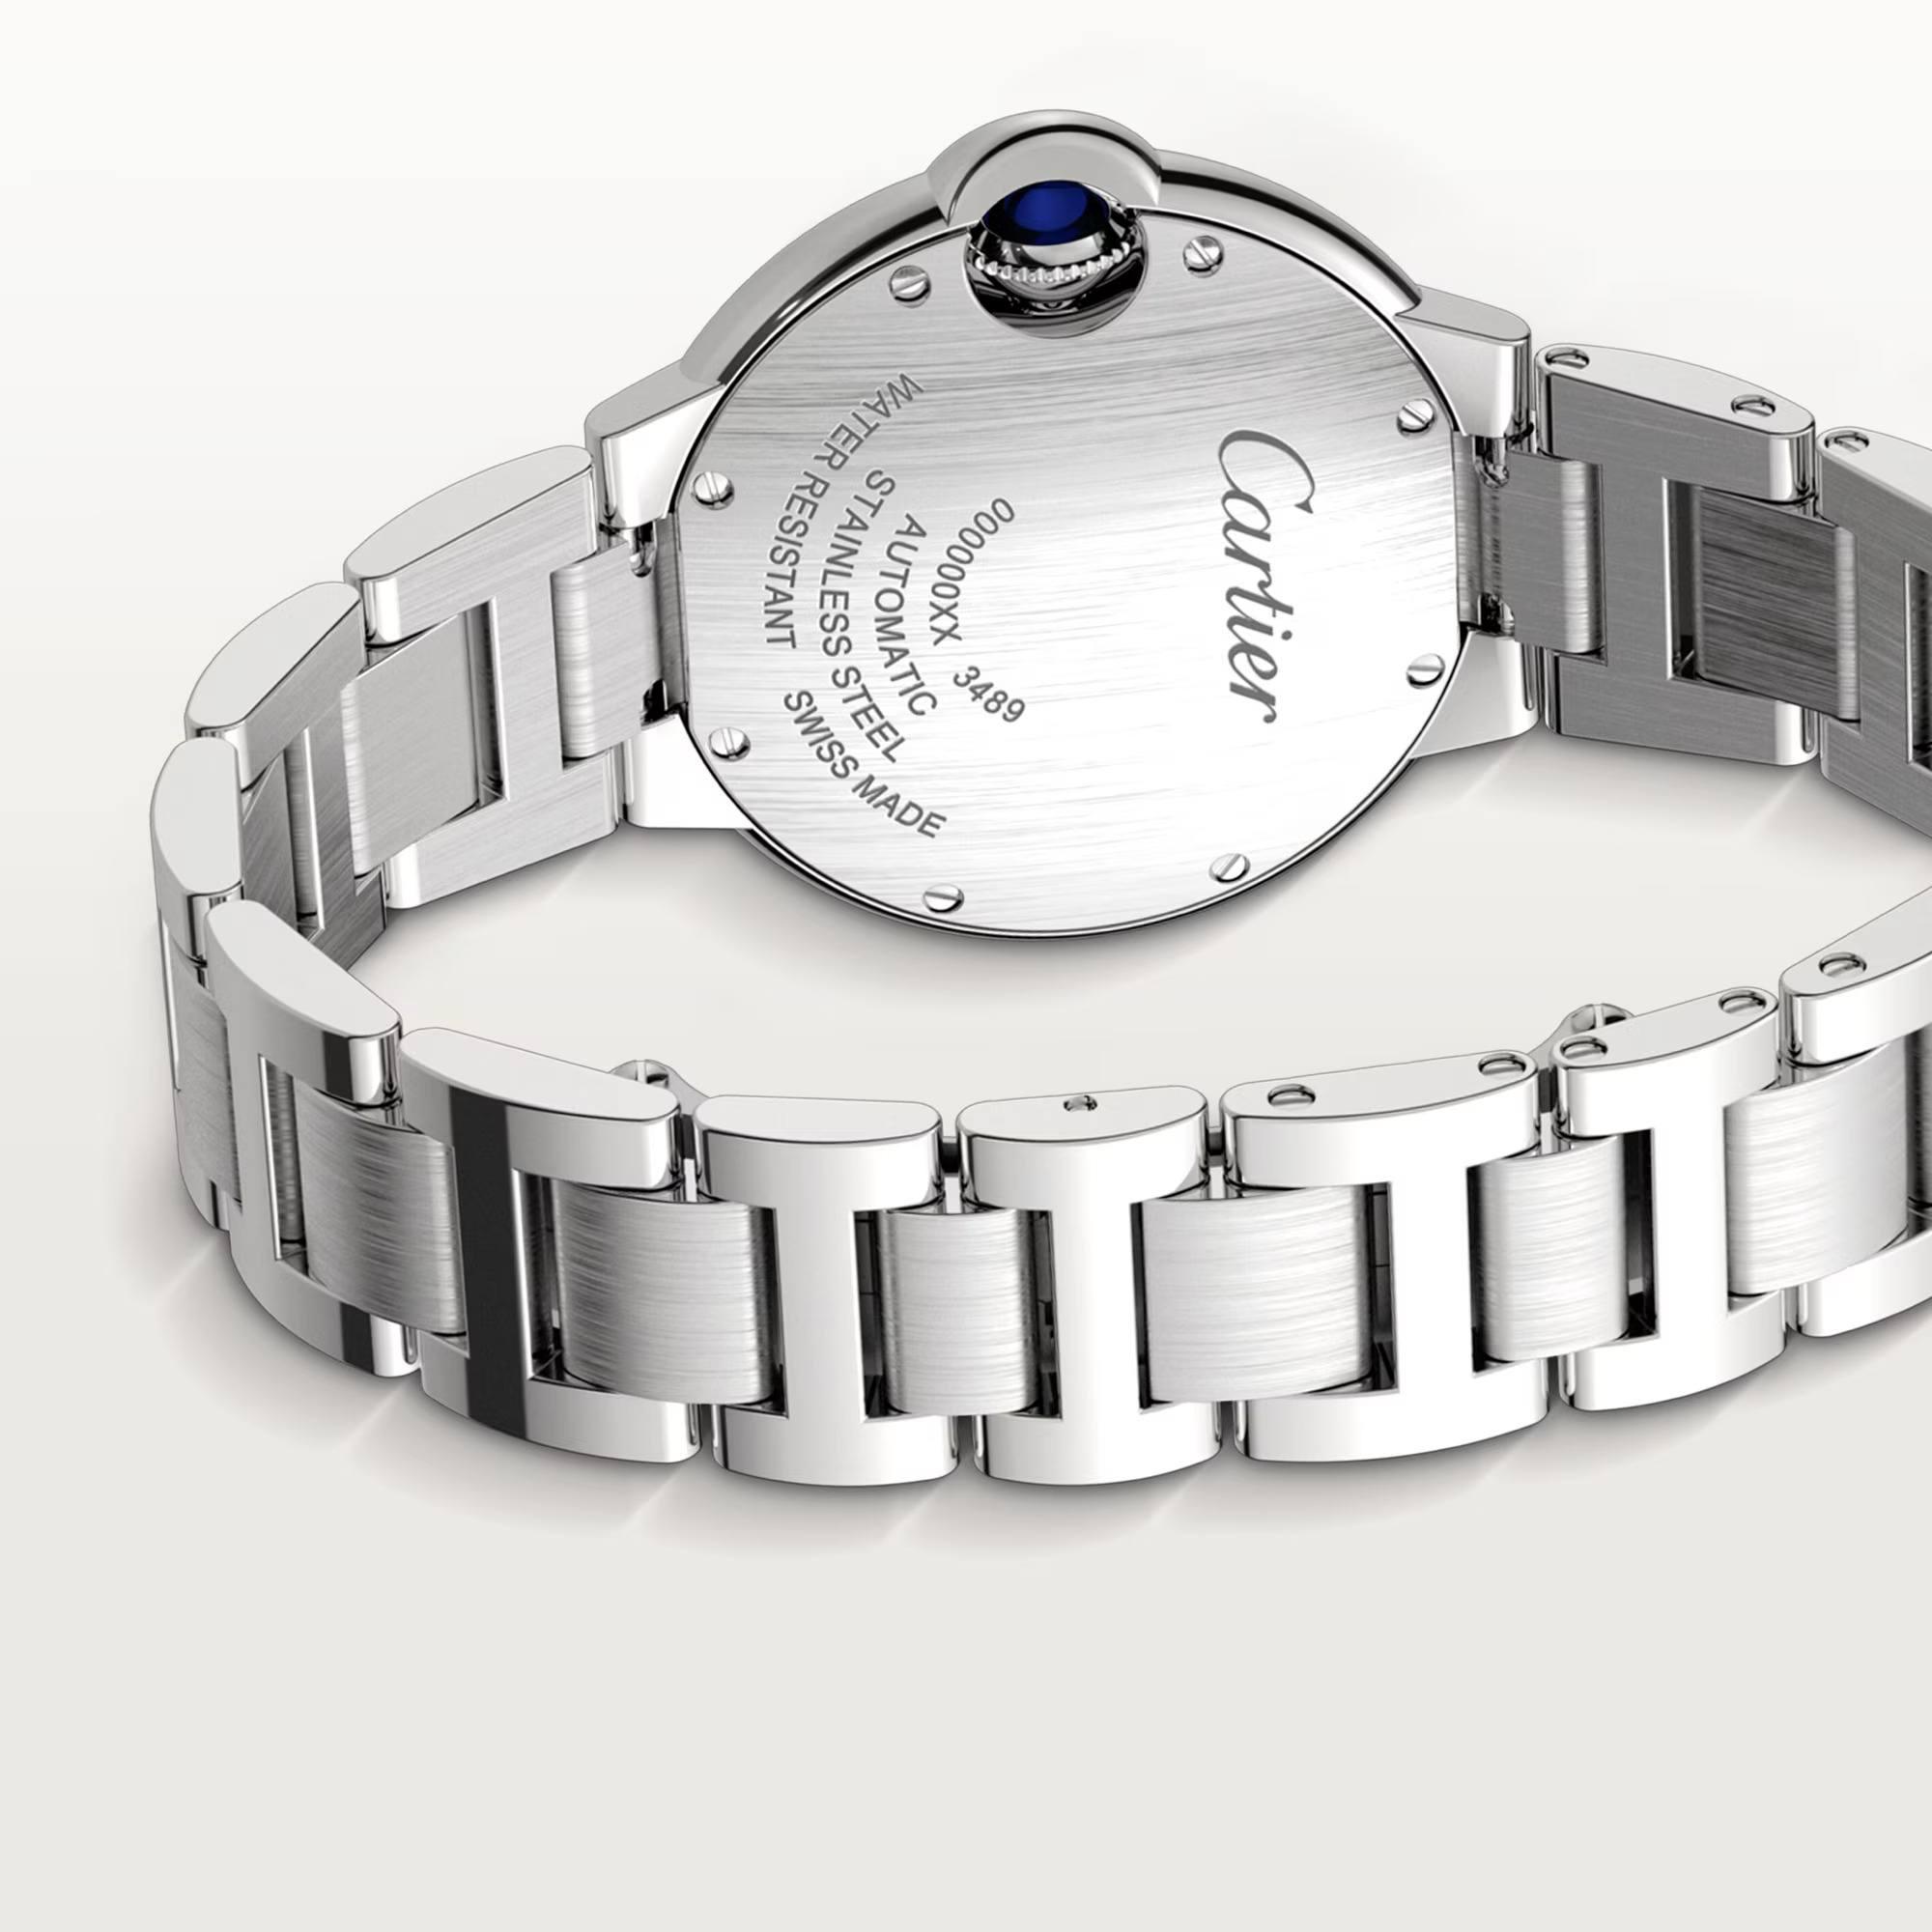 Ballon de Cartier Watch with Diamonds, 33mm 7